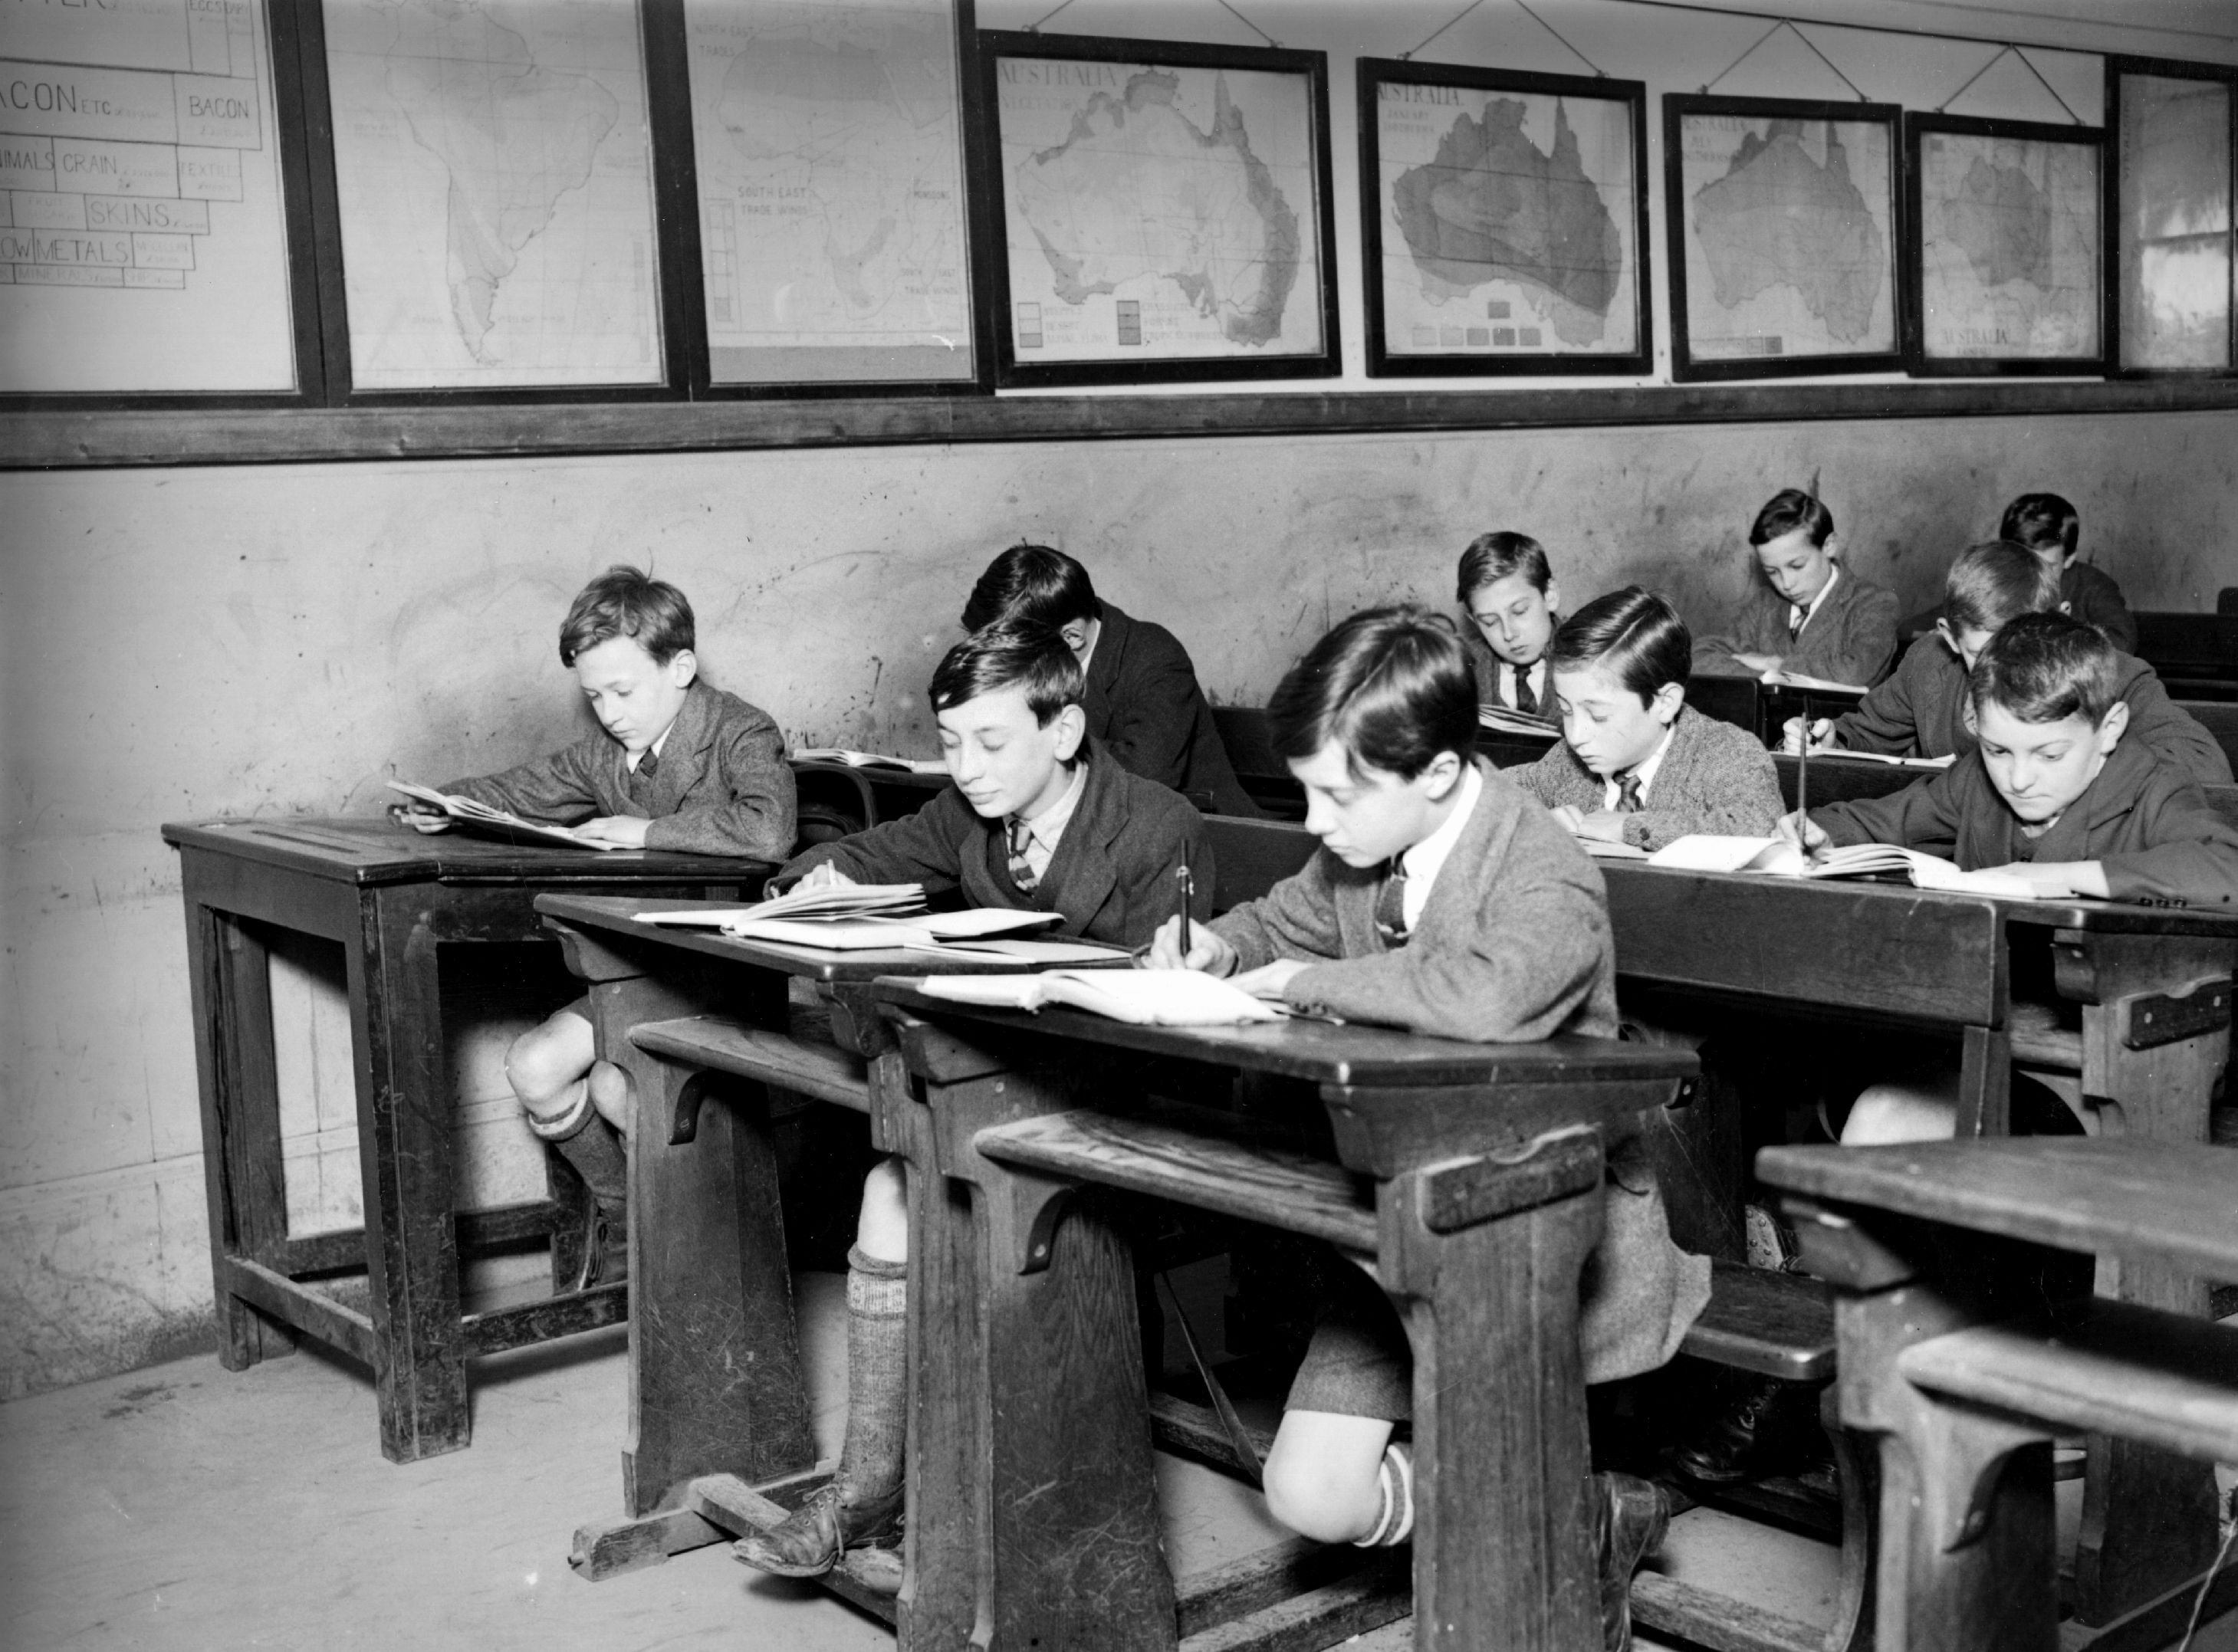 Mayo de 1922: Muchachos trabajando en su salón de clases. (Foto de Topical Press Agency/Getty Images)